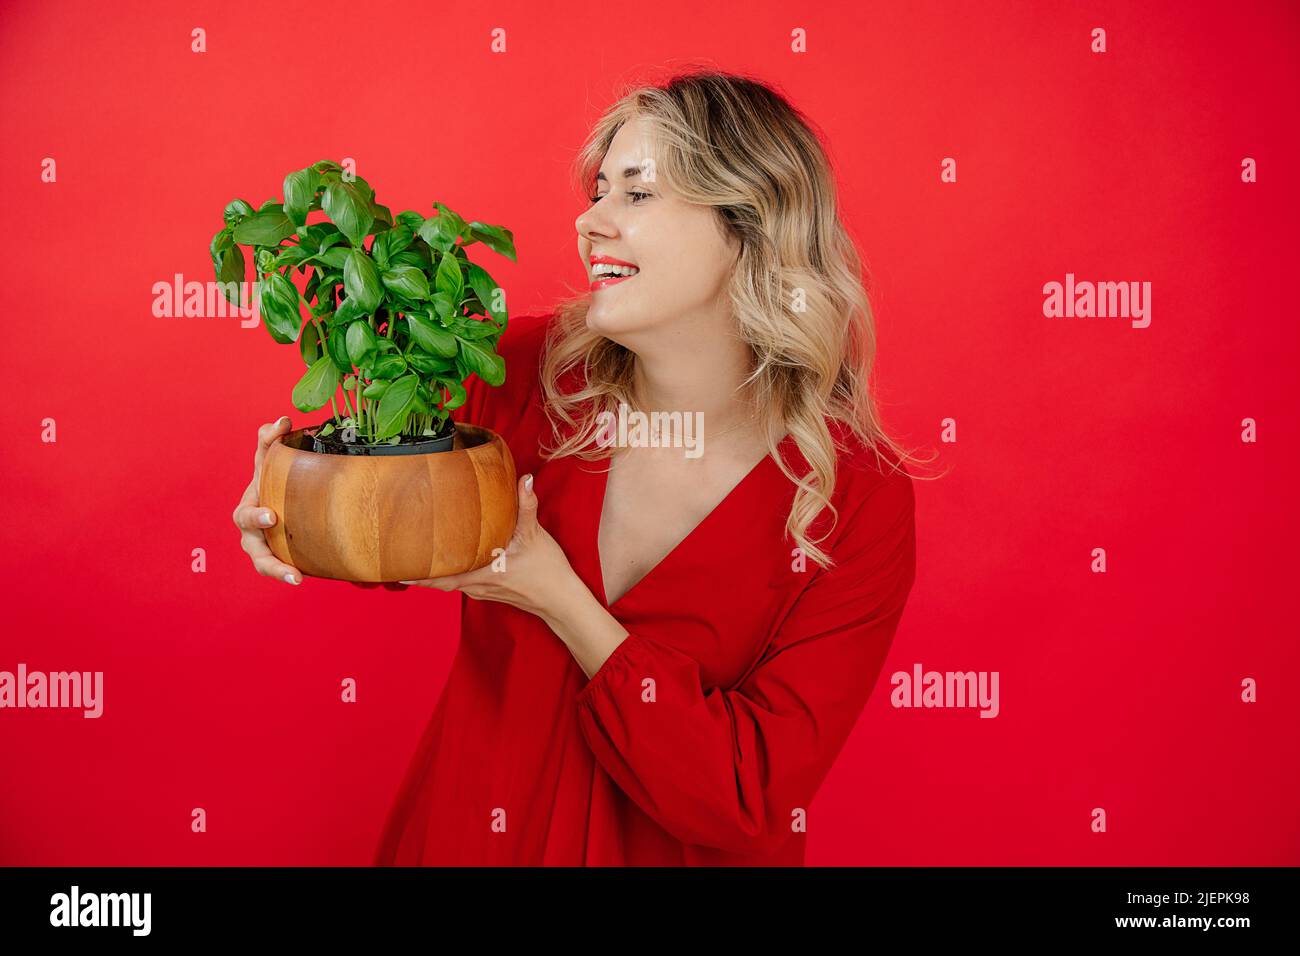 Femme blonde souriante qui hote la plante de basilic sur fond rouge en studio, sourire souriant et en regardant le basilic Banque D'Images